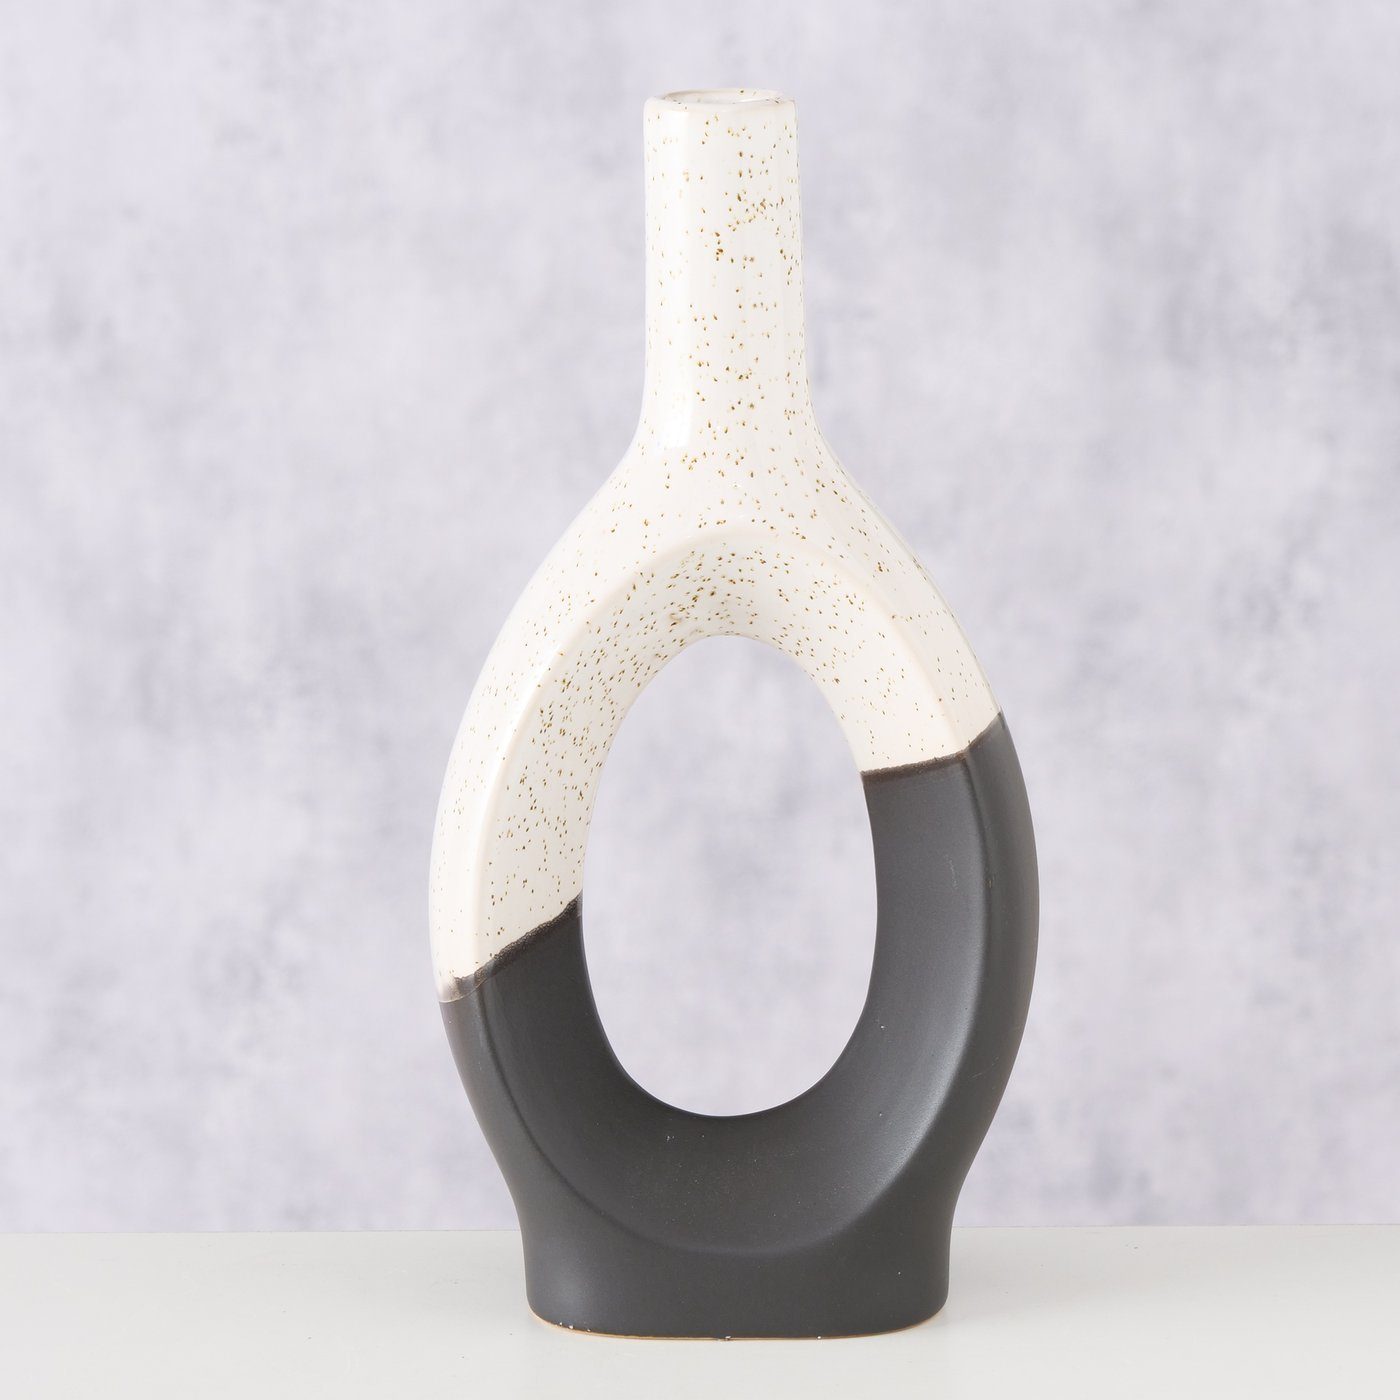 BOLTZE Dekovase "Uniqua" aus Keramik in schwarz/weiß, Vase Blumenvase